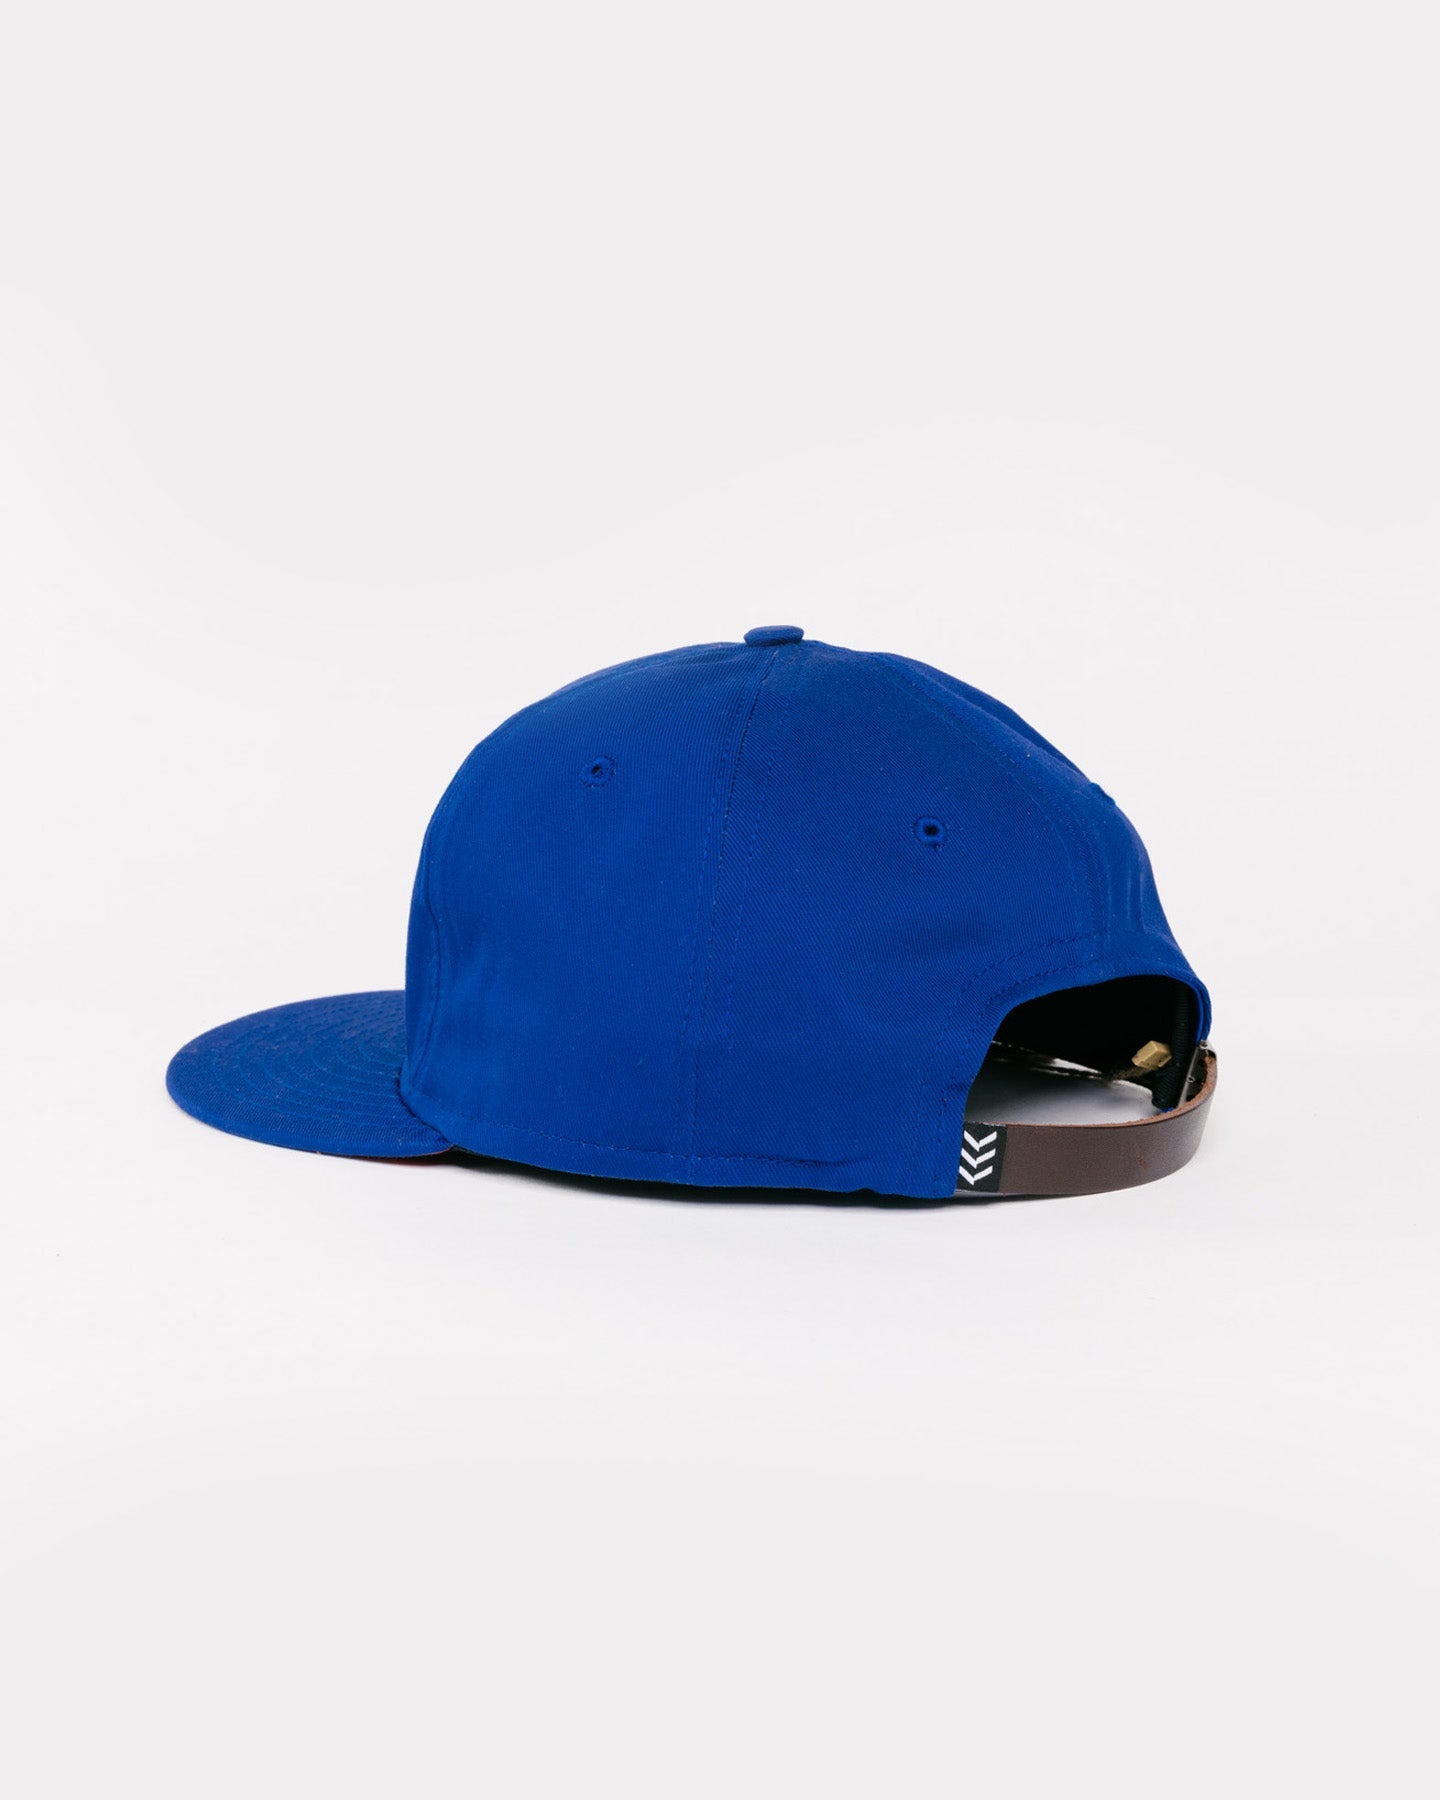 St. Louis Stars Royal Blue Vintage Baseball Hat | CHARLIE HUSTLE